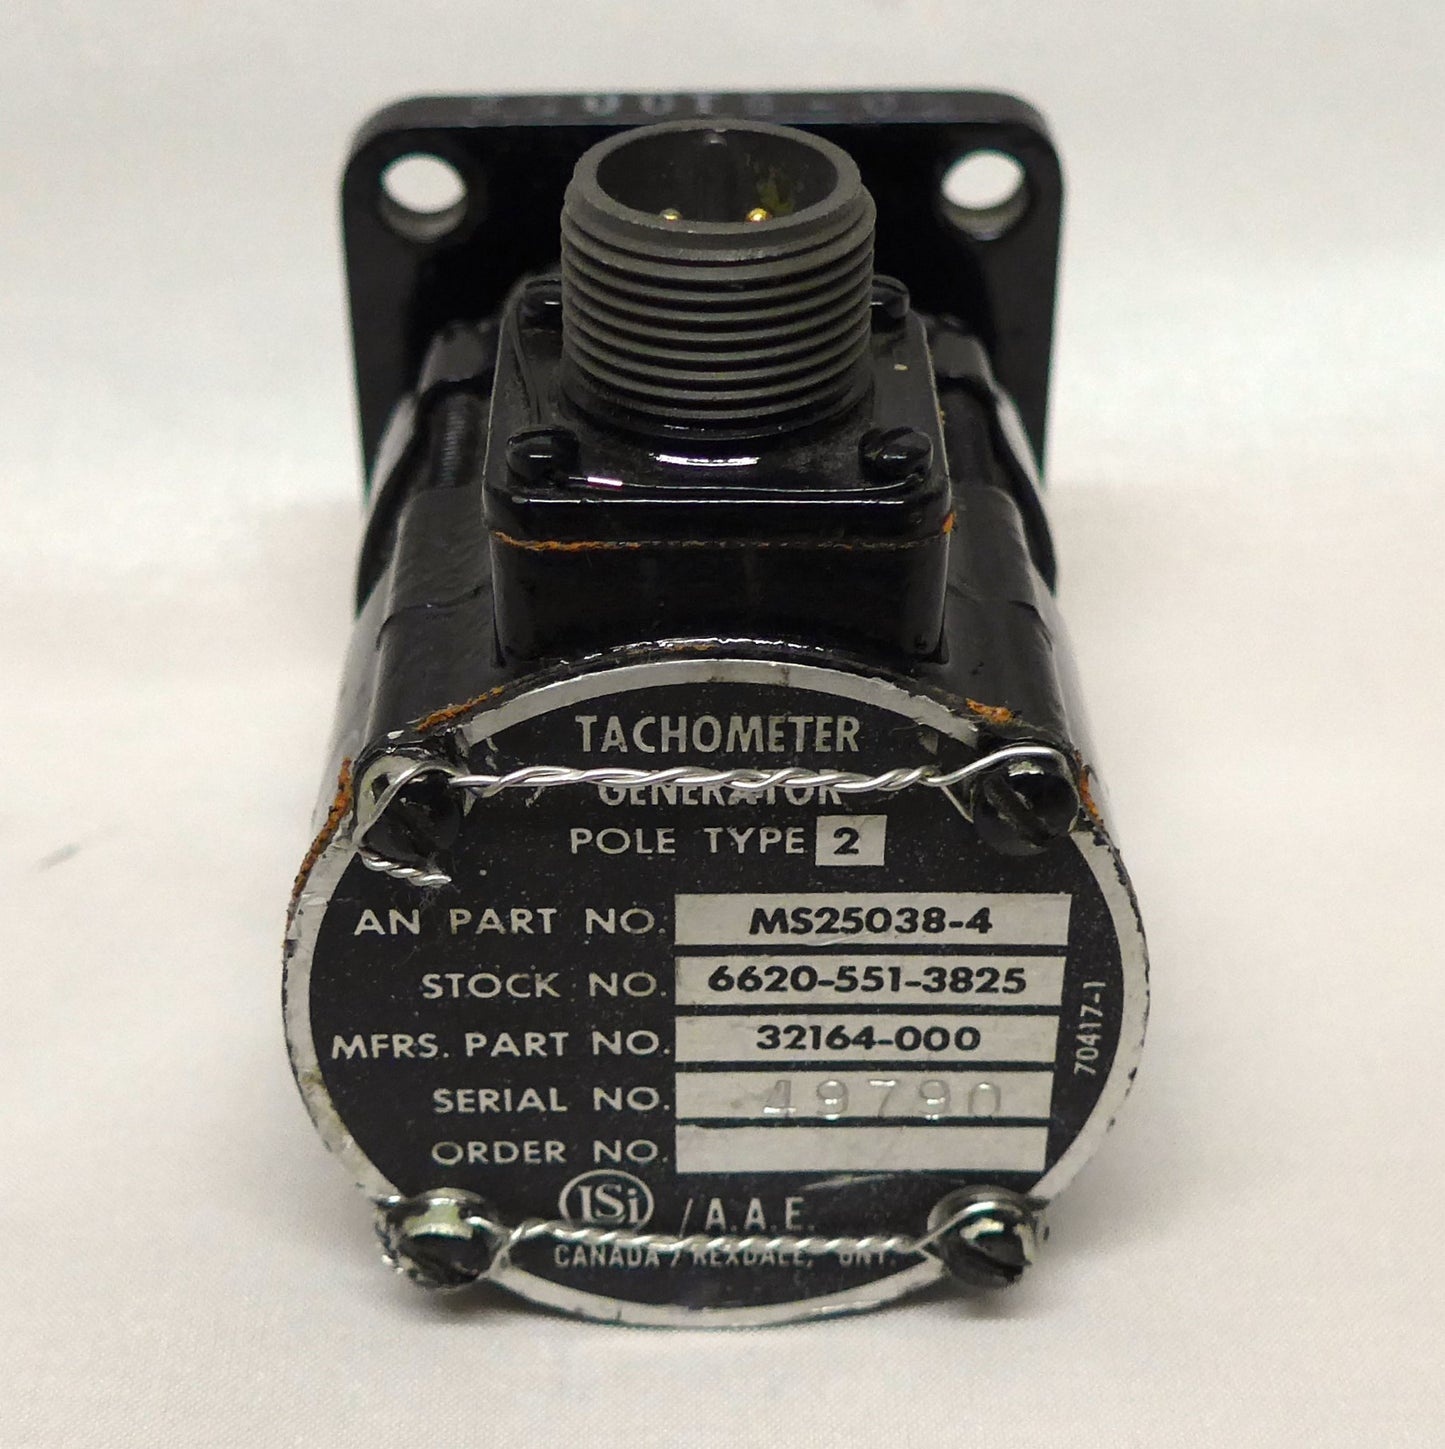 Tachometer Generator S/N 49790 (N/S)